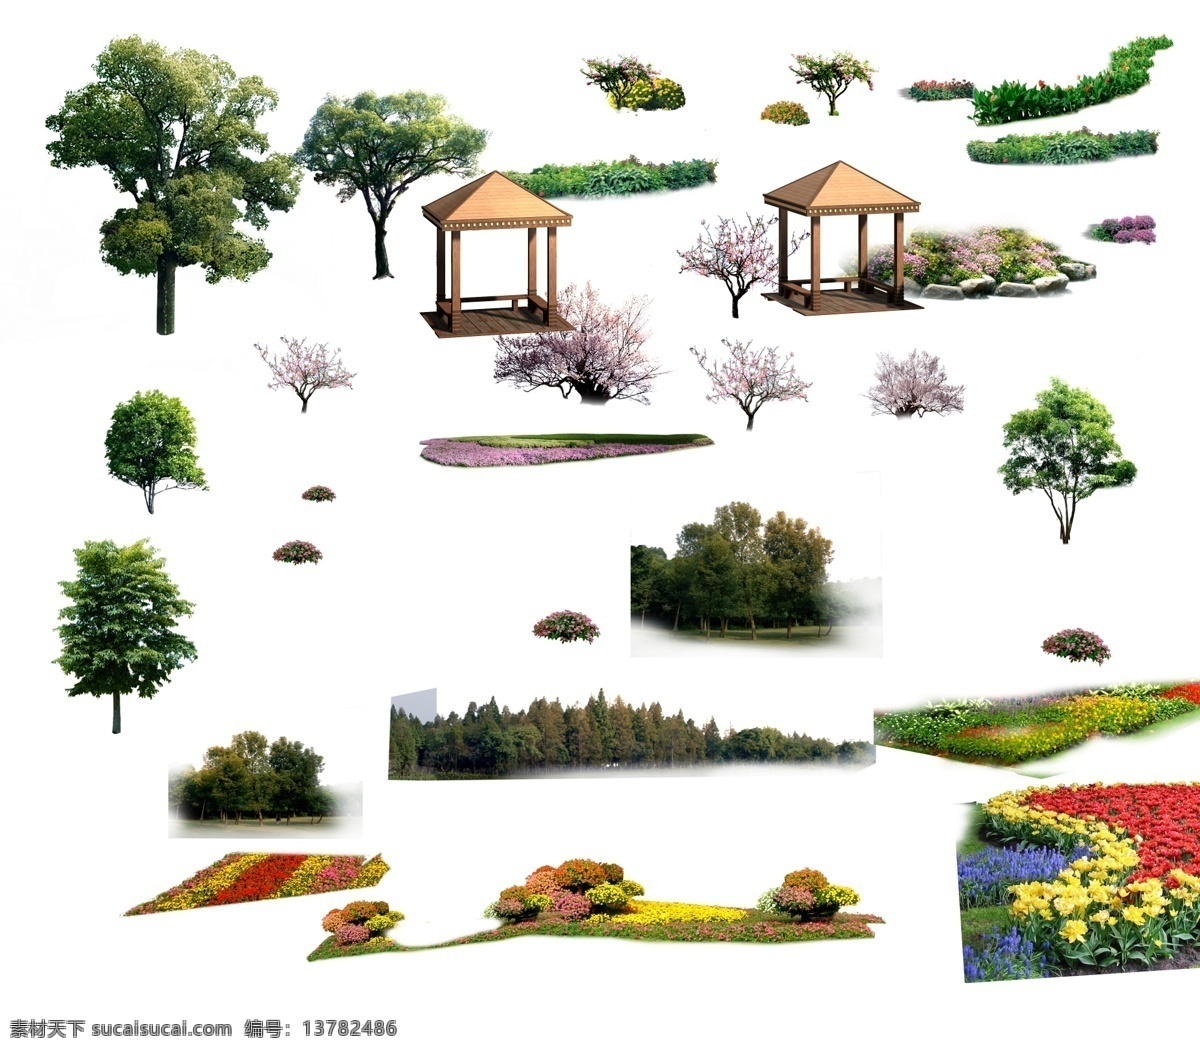 效果图 后期树色 亭子 园林效果图 植物 色带 桃树 凉亭 花丛 树木 其他设计 环境设计 源文件